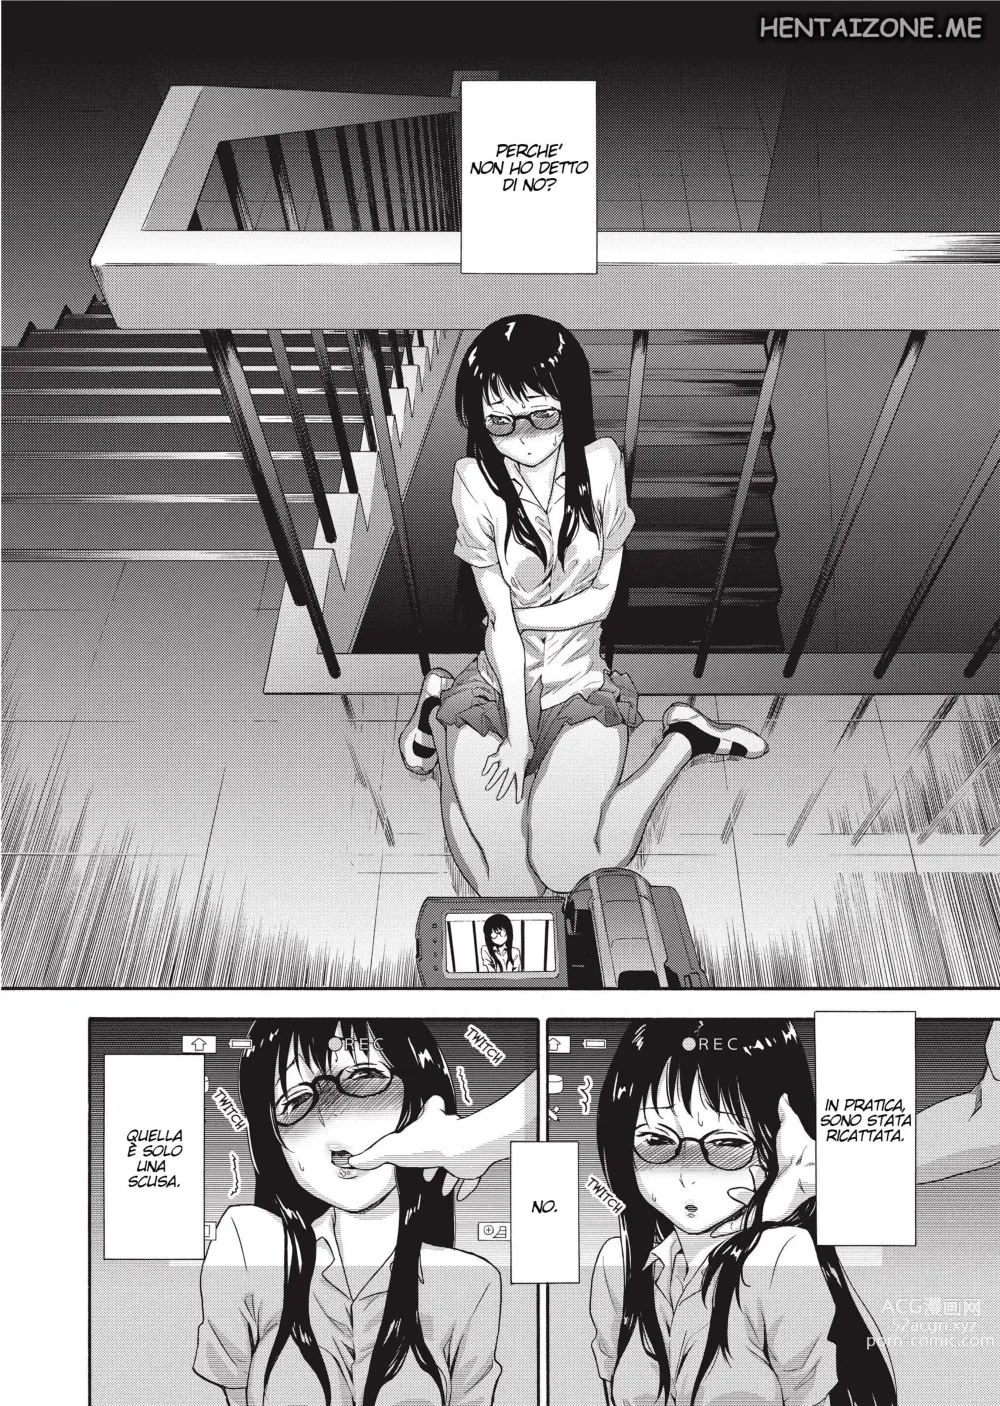 Page 13 of manga Giocare con il Fuoco (decensored)